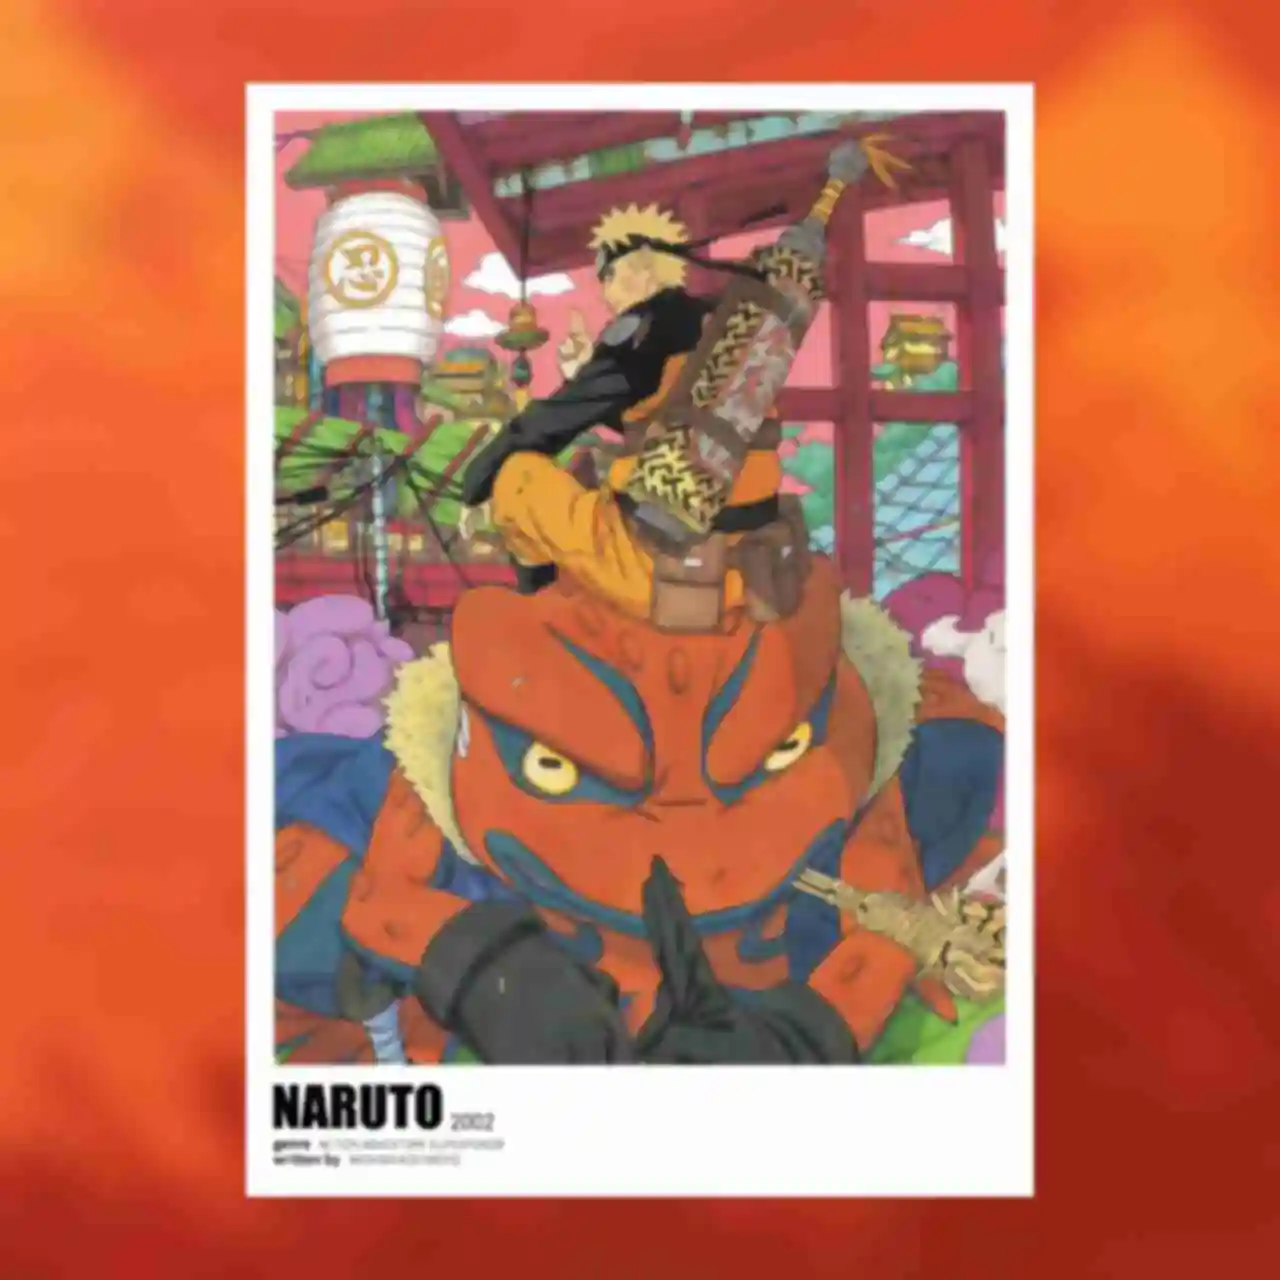 Постер №4 ⦁ Наруто и Гамакичи ⦁ Плакат ⦁ Подарки и сувениры в стиле аниме Naruto. Фото №88